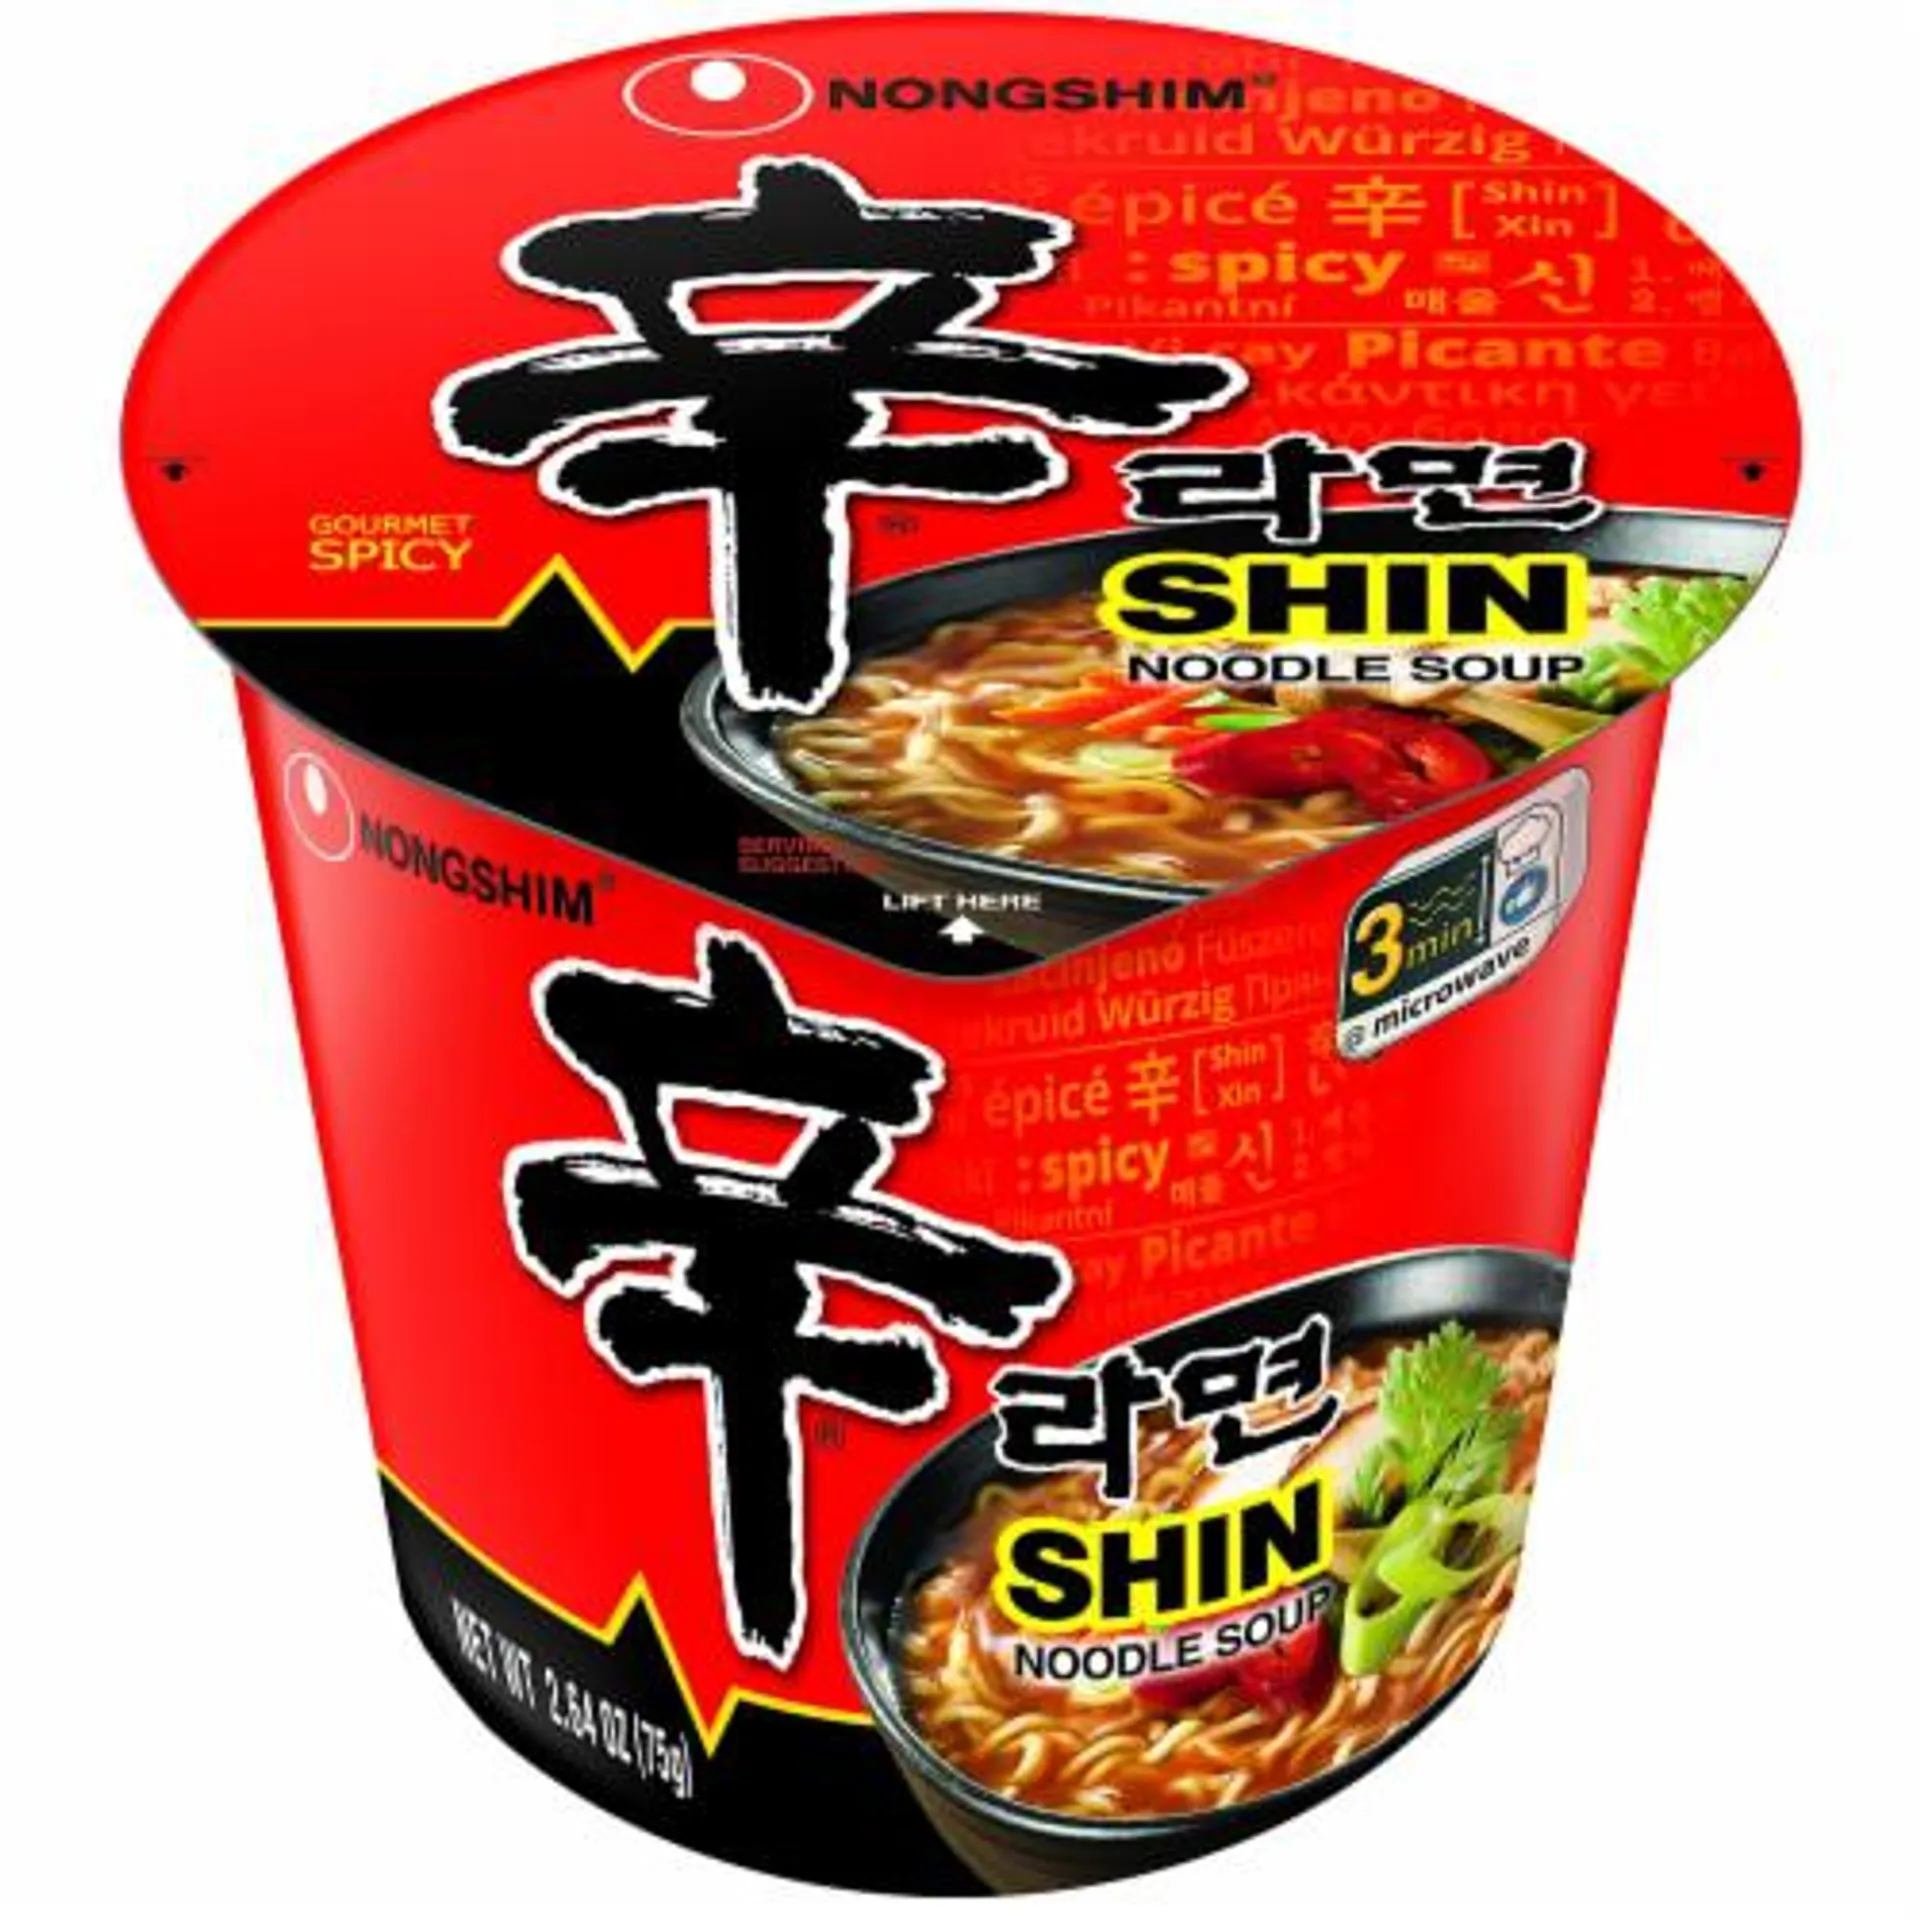 Nongshim Noodle Soup Shin Cup